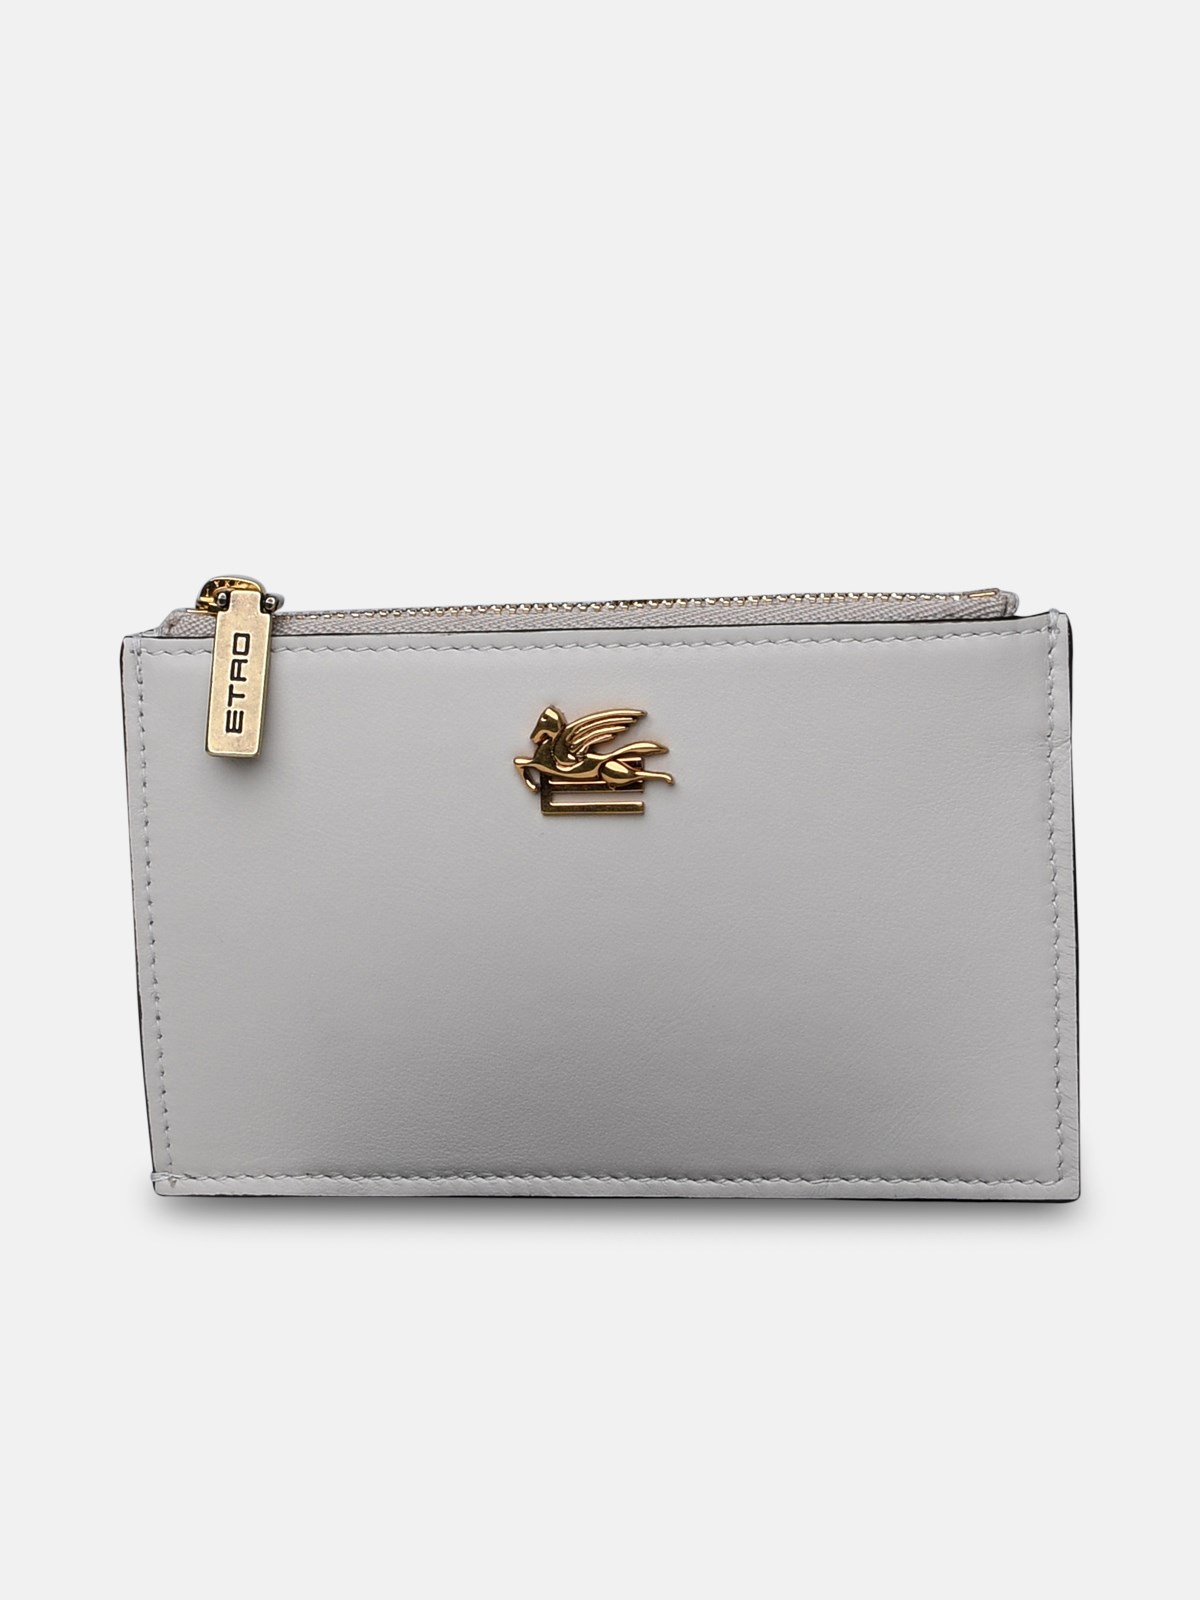 Etro White Leather Wallet